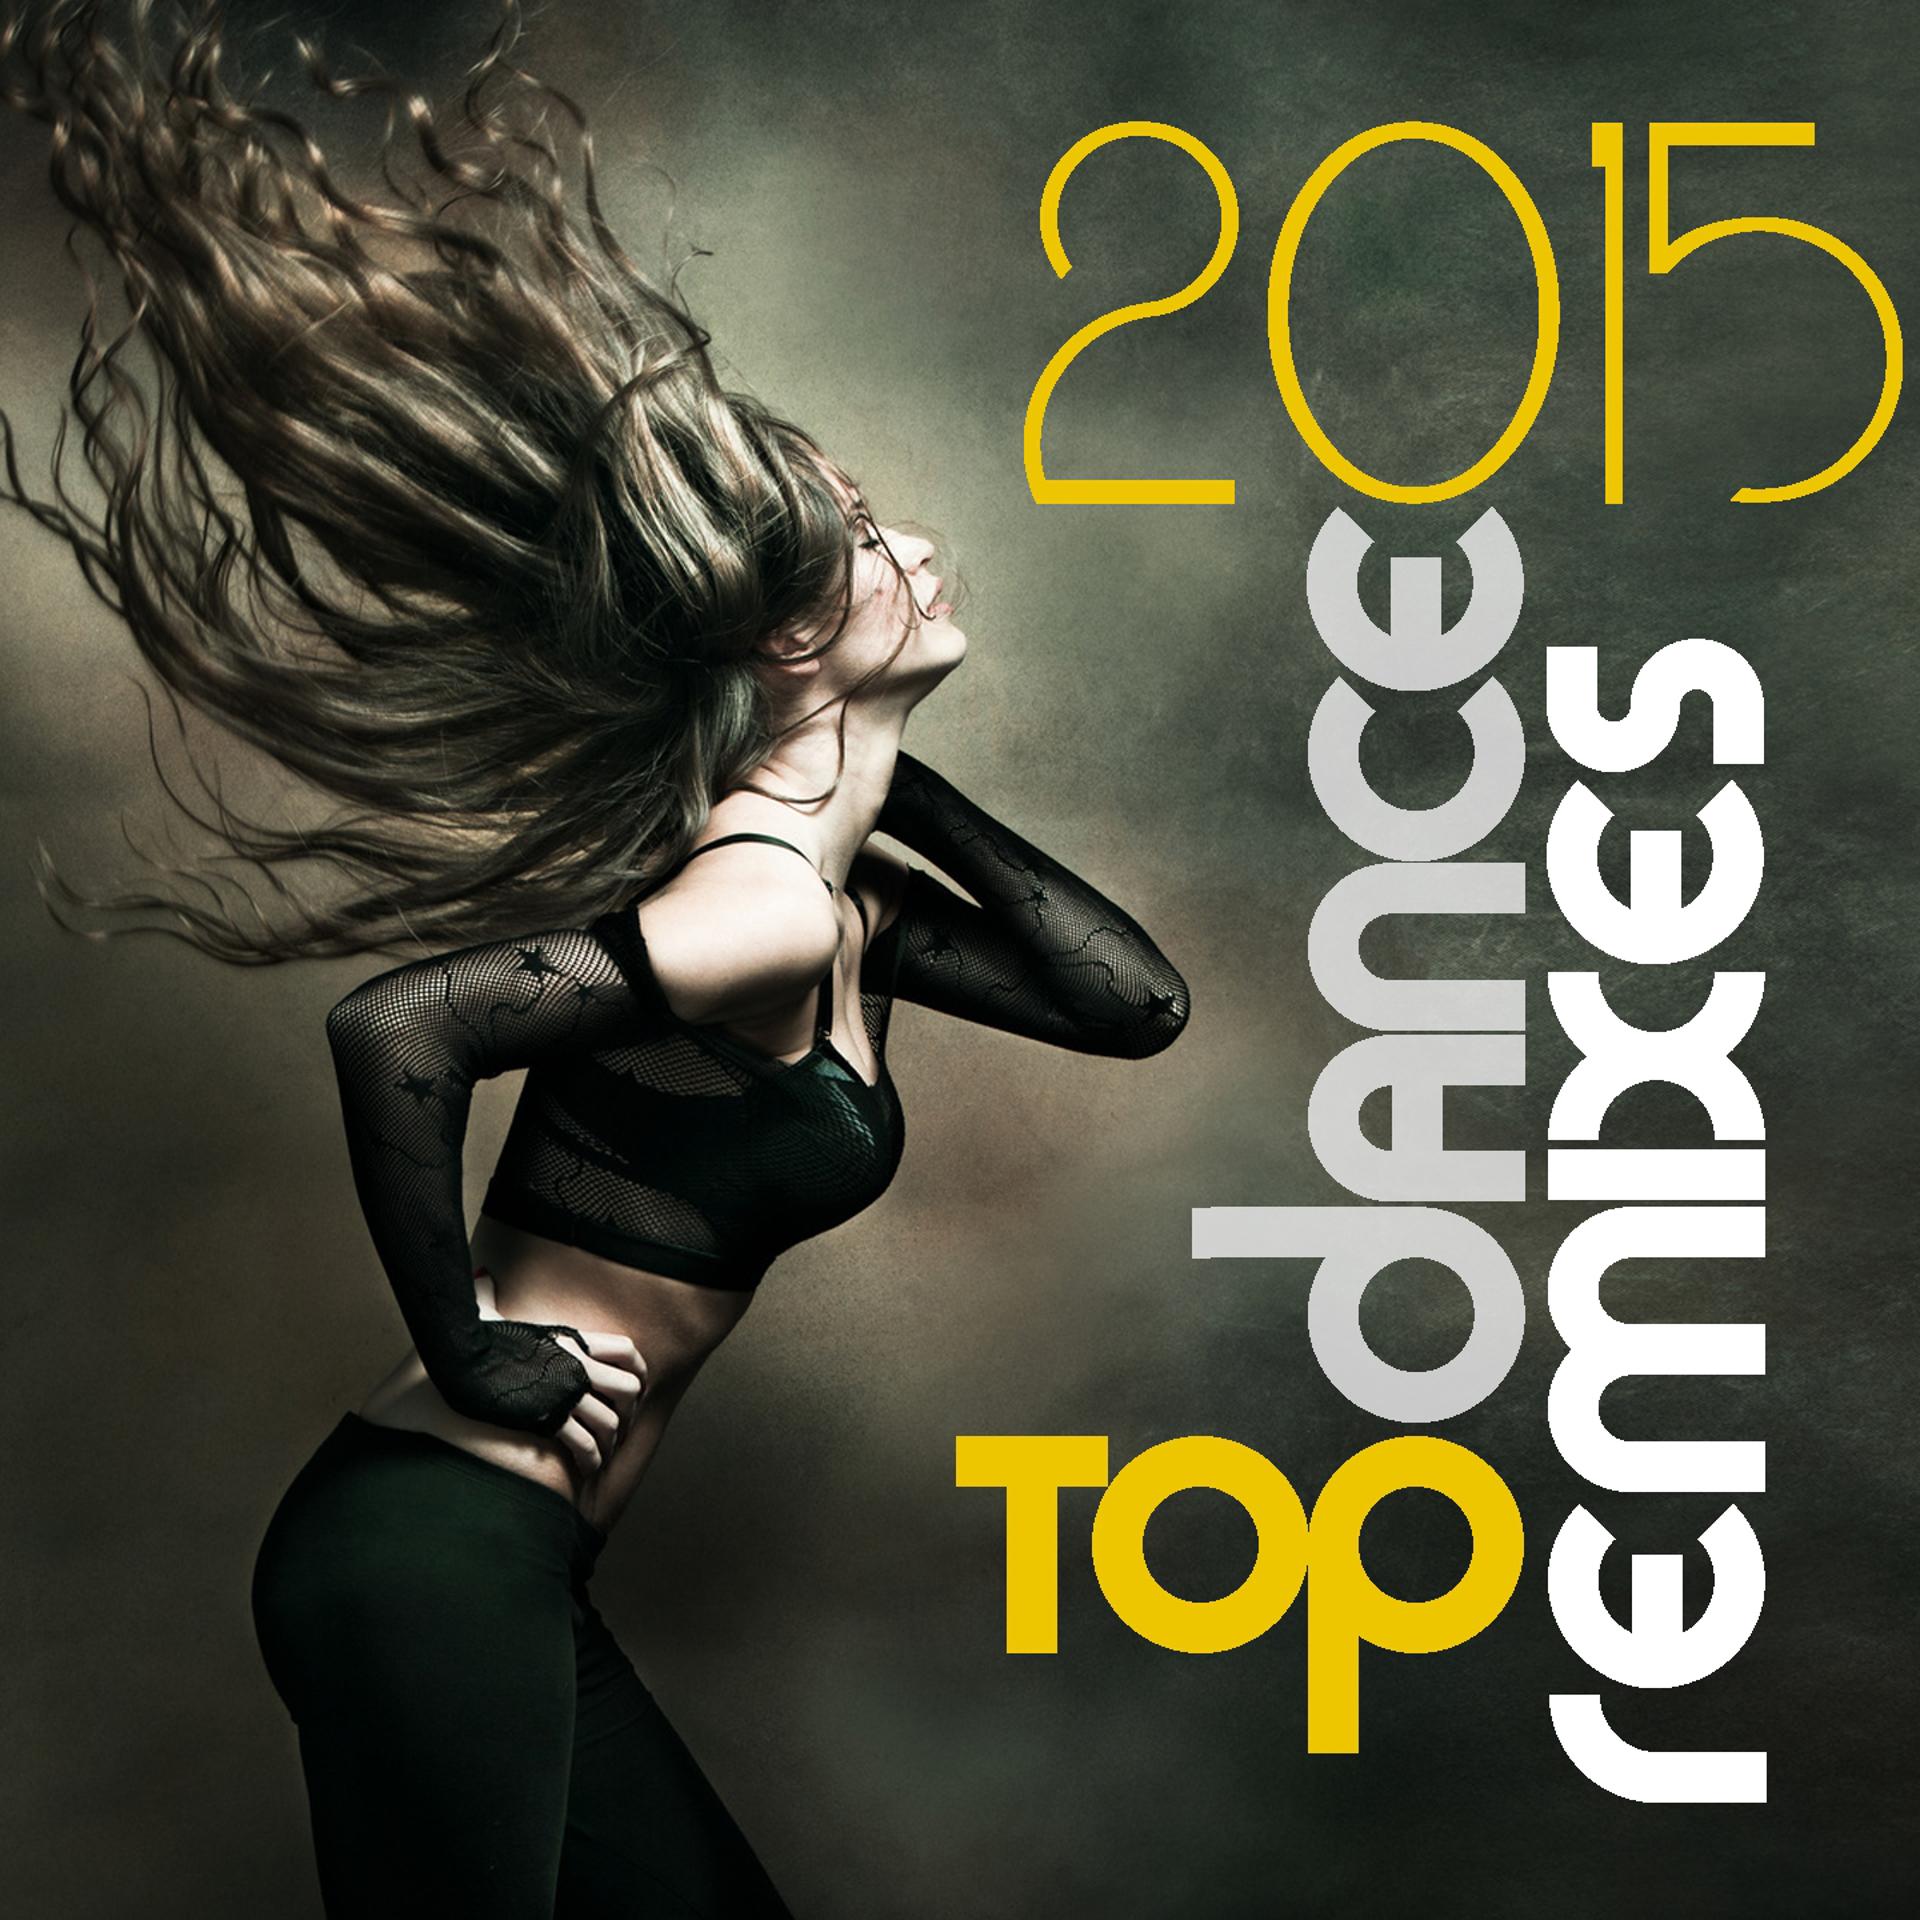 Best remixes dance. Dance Remixes. Топ альбомы 2015. Топ ремиксы. Танцевали Remix.